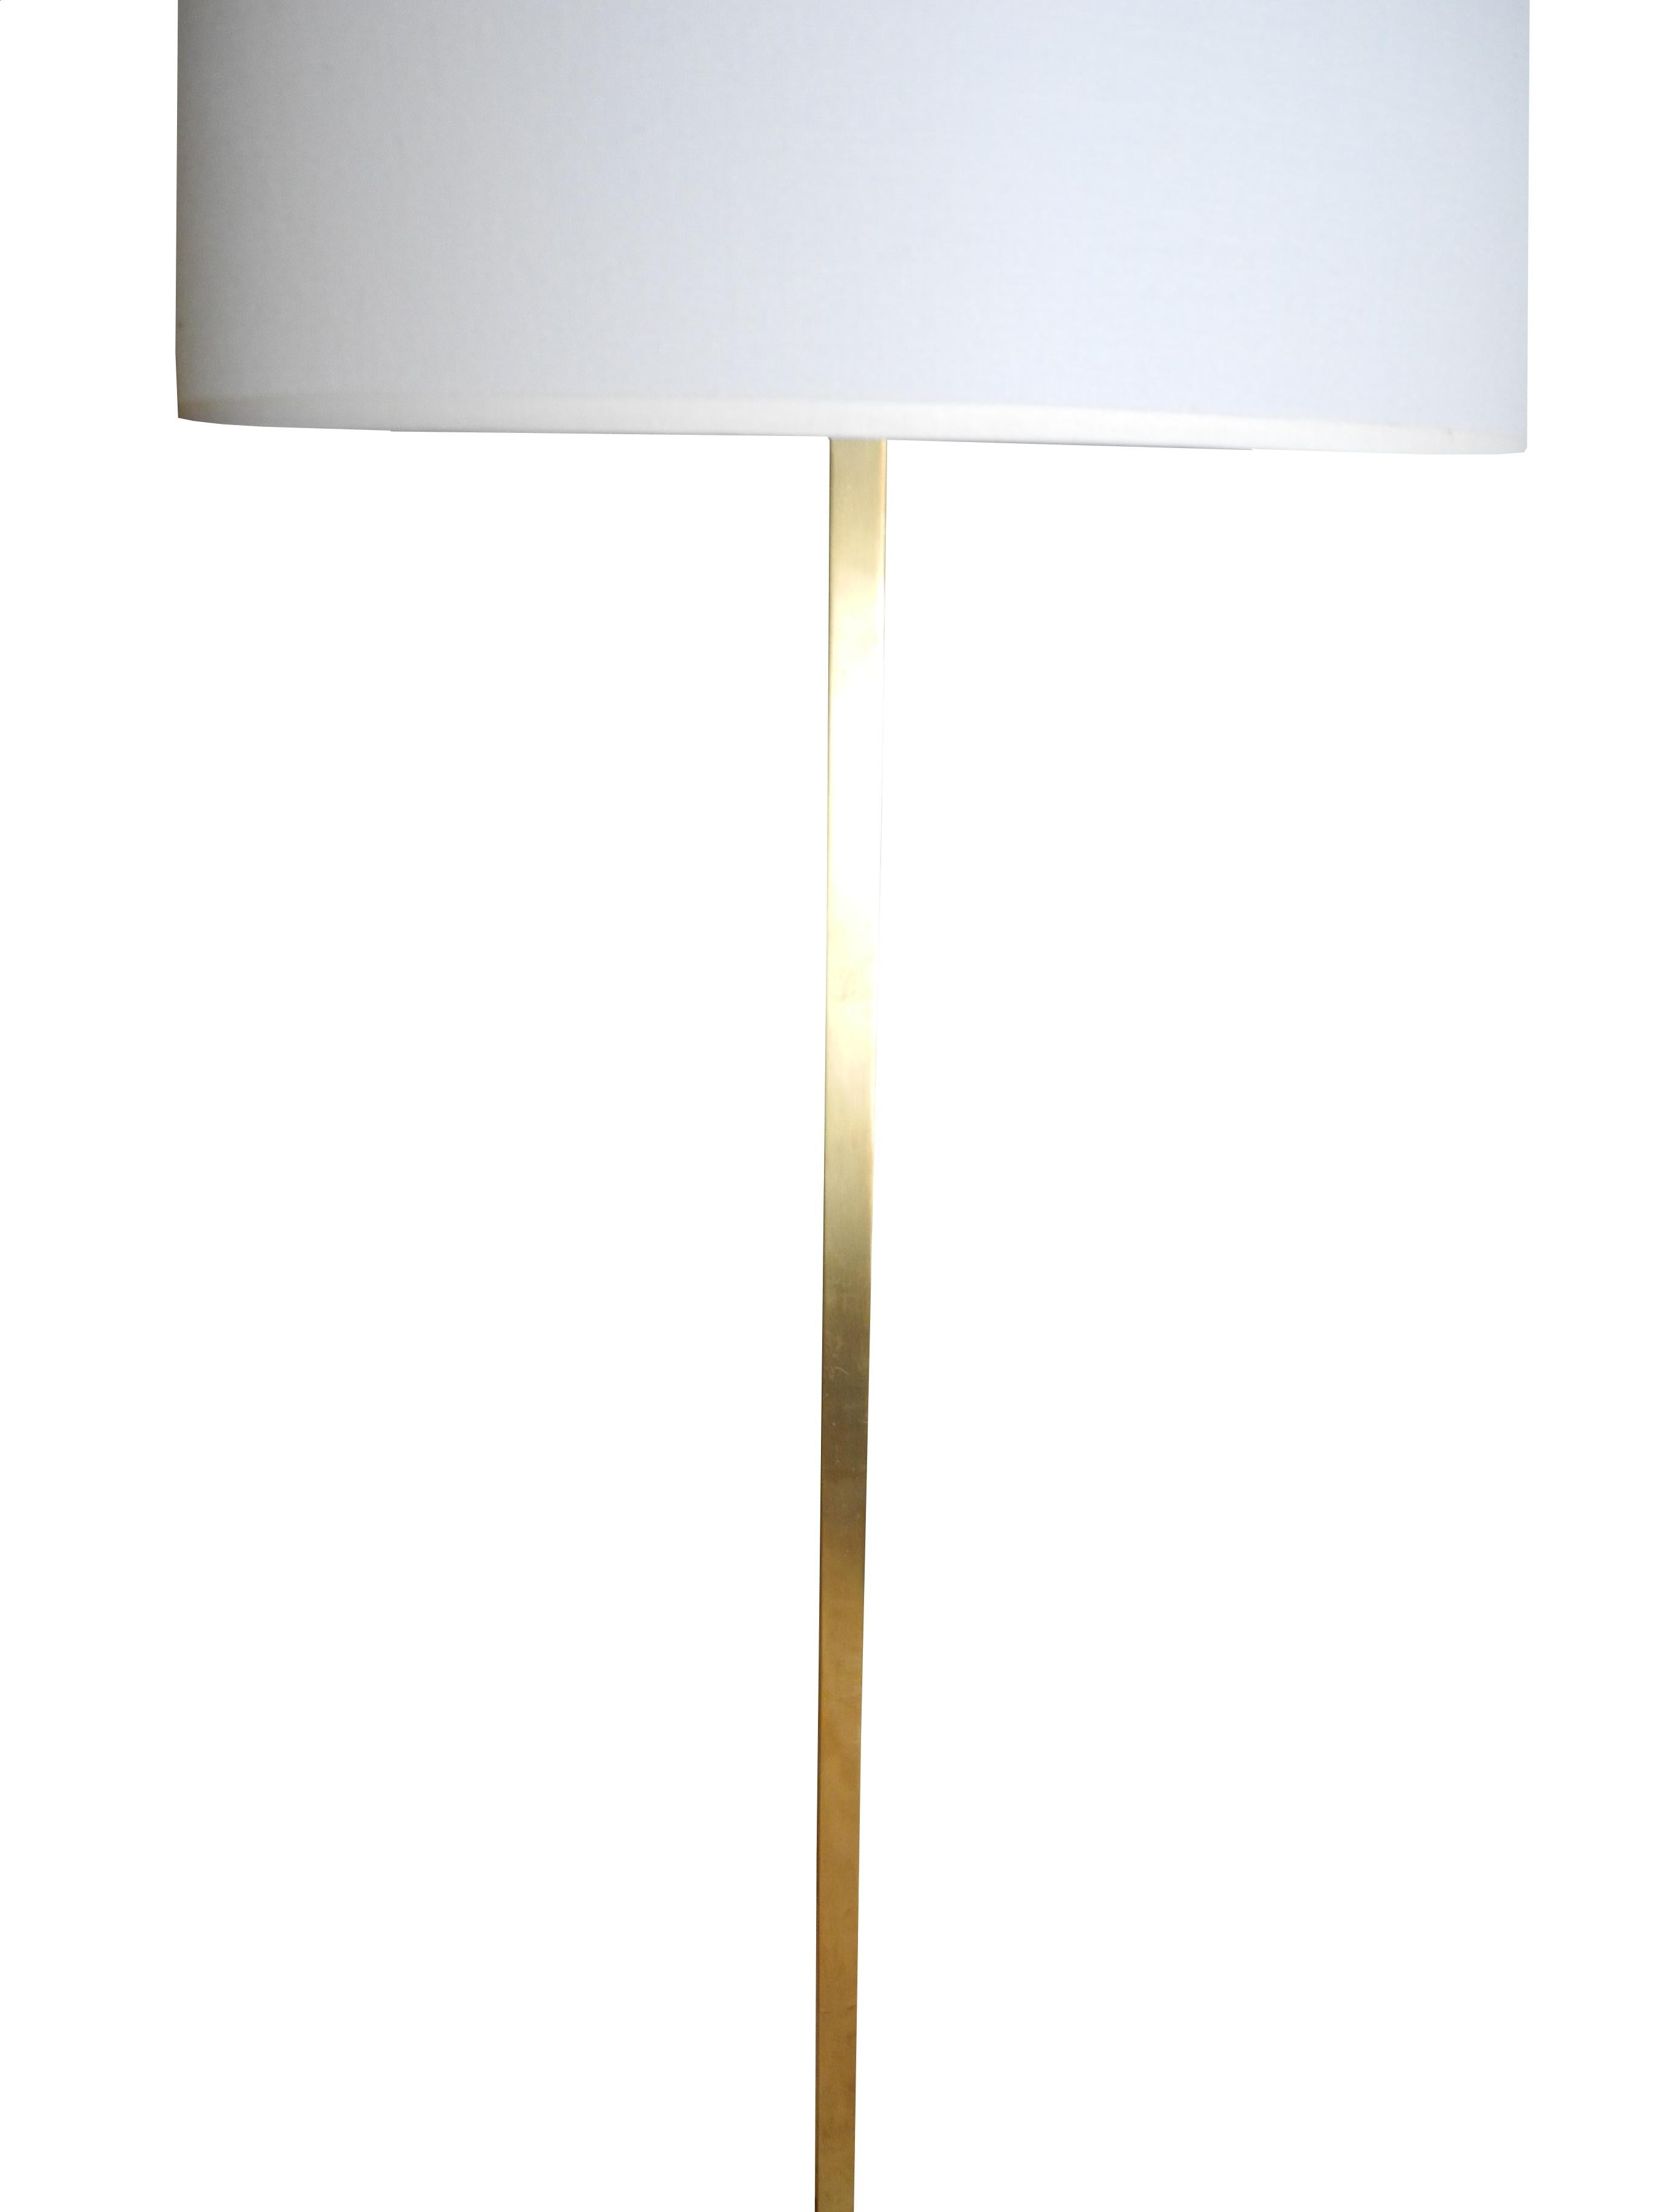 American Modern Brass Floor Lamp by T.H. Robsjohn-Gibbings for Hansen  For Sale